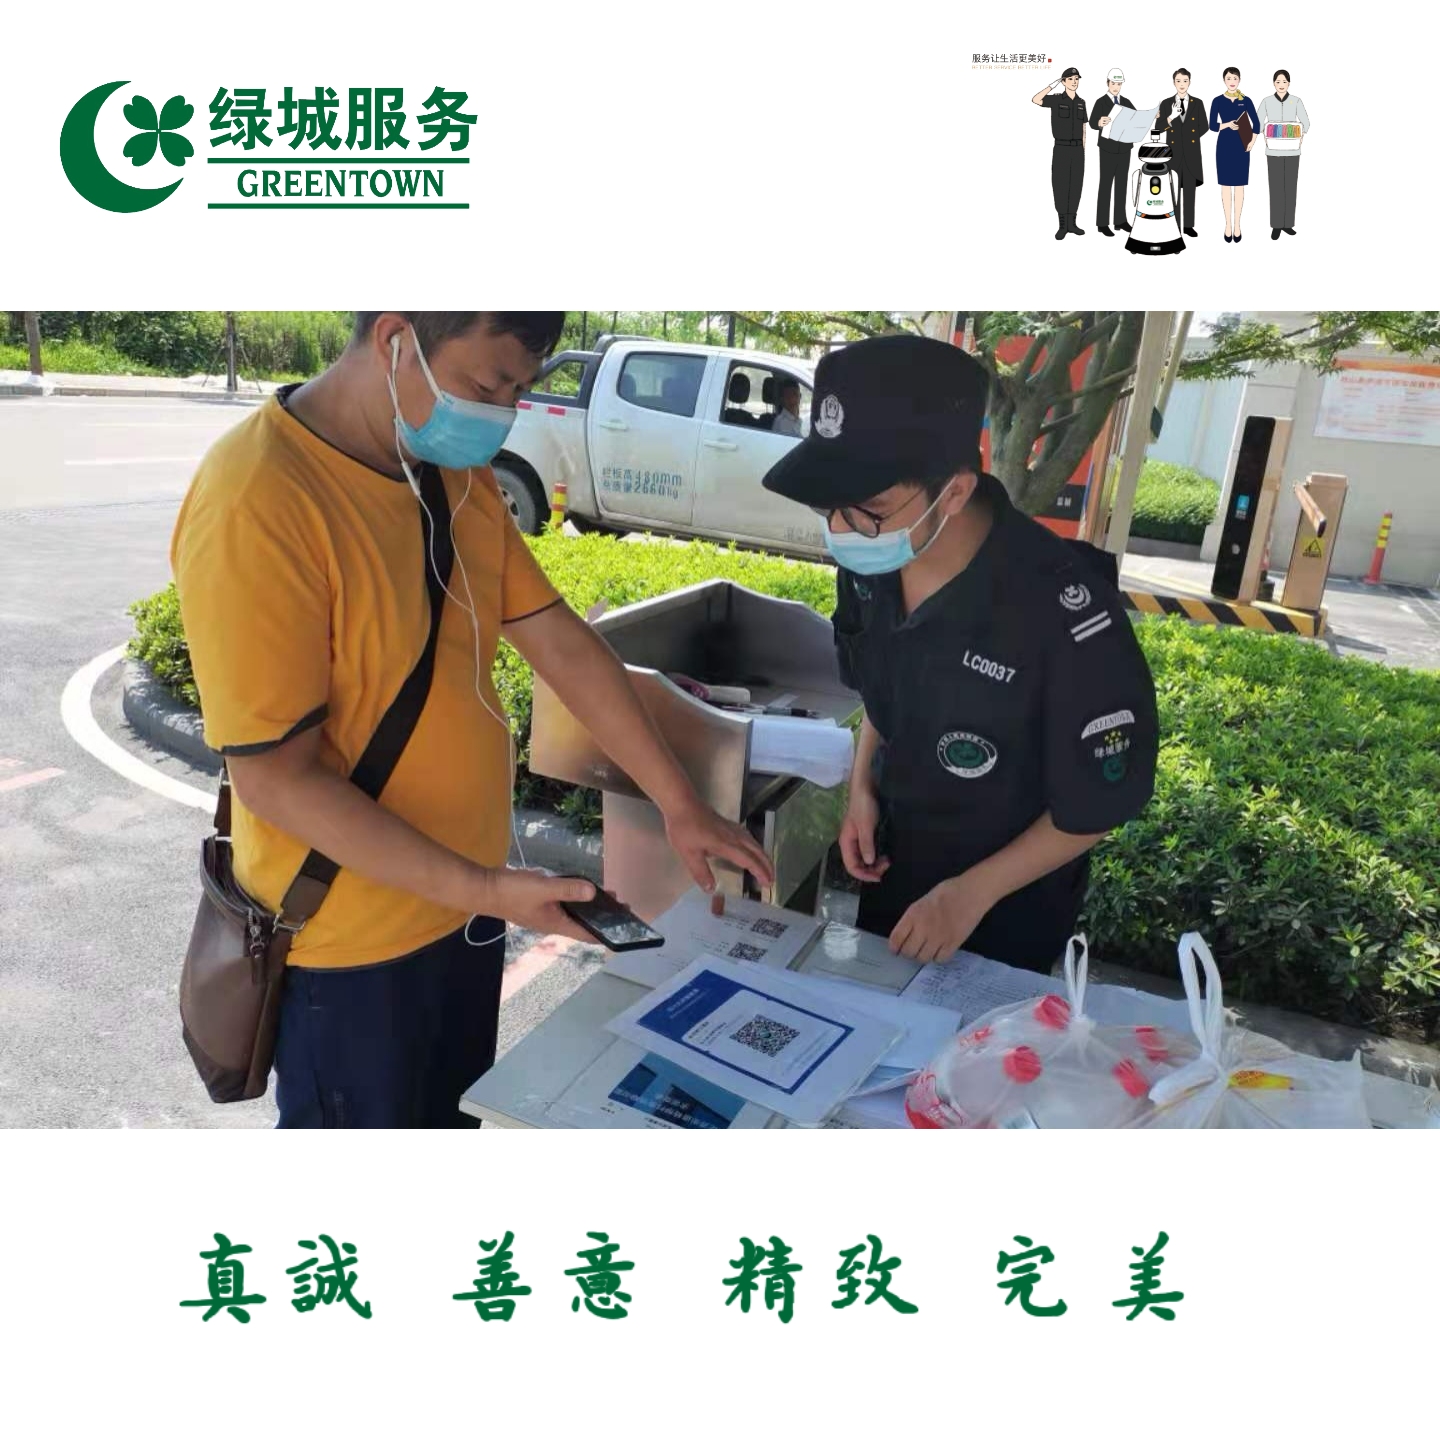 重庆两江绿城物业服务有限公司 环境照片活动图片